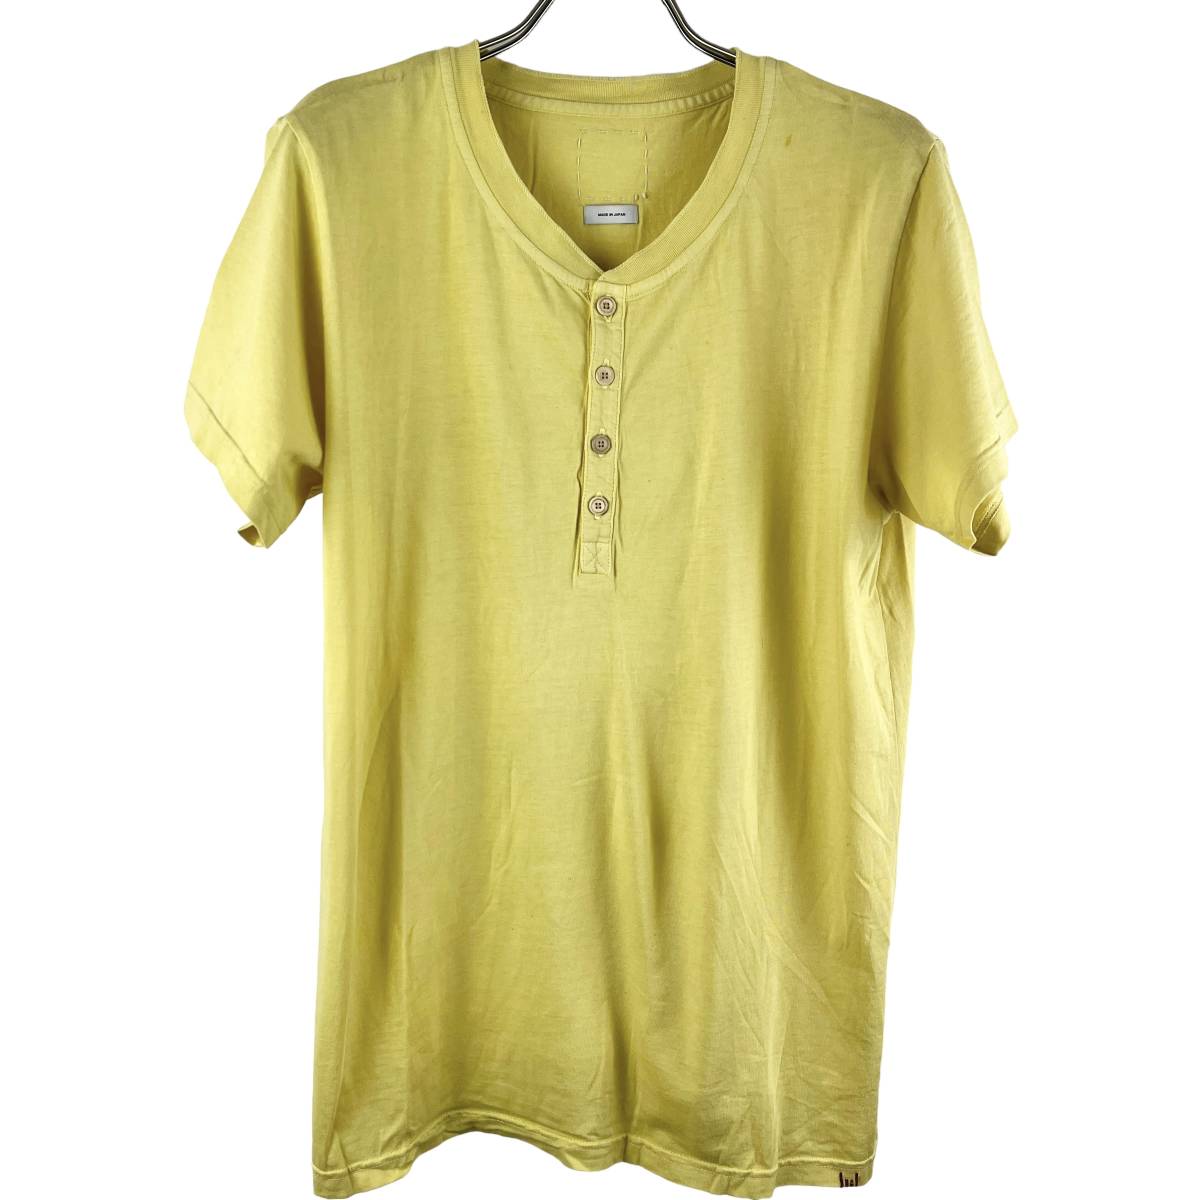 VISVIM(ビズビム) Bottom Collar Fitting T Shirt (yellow)